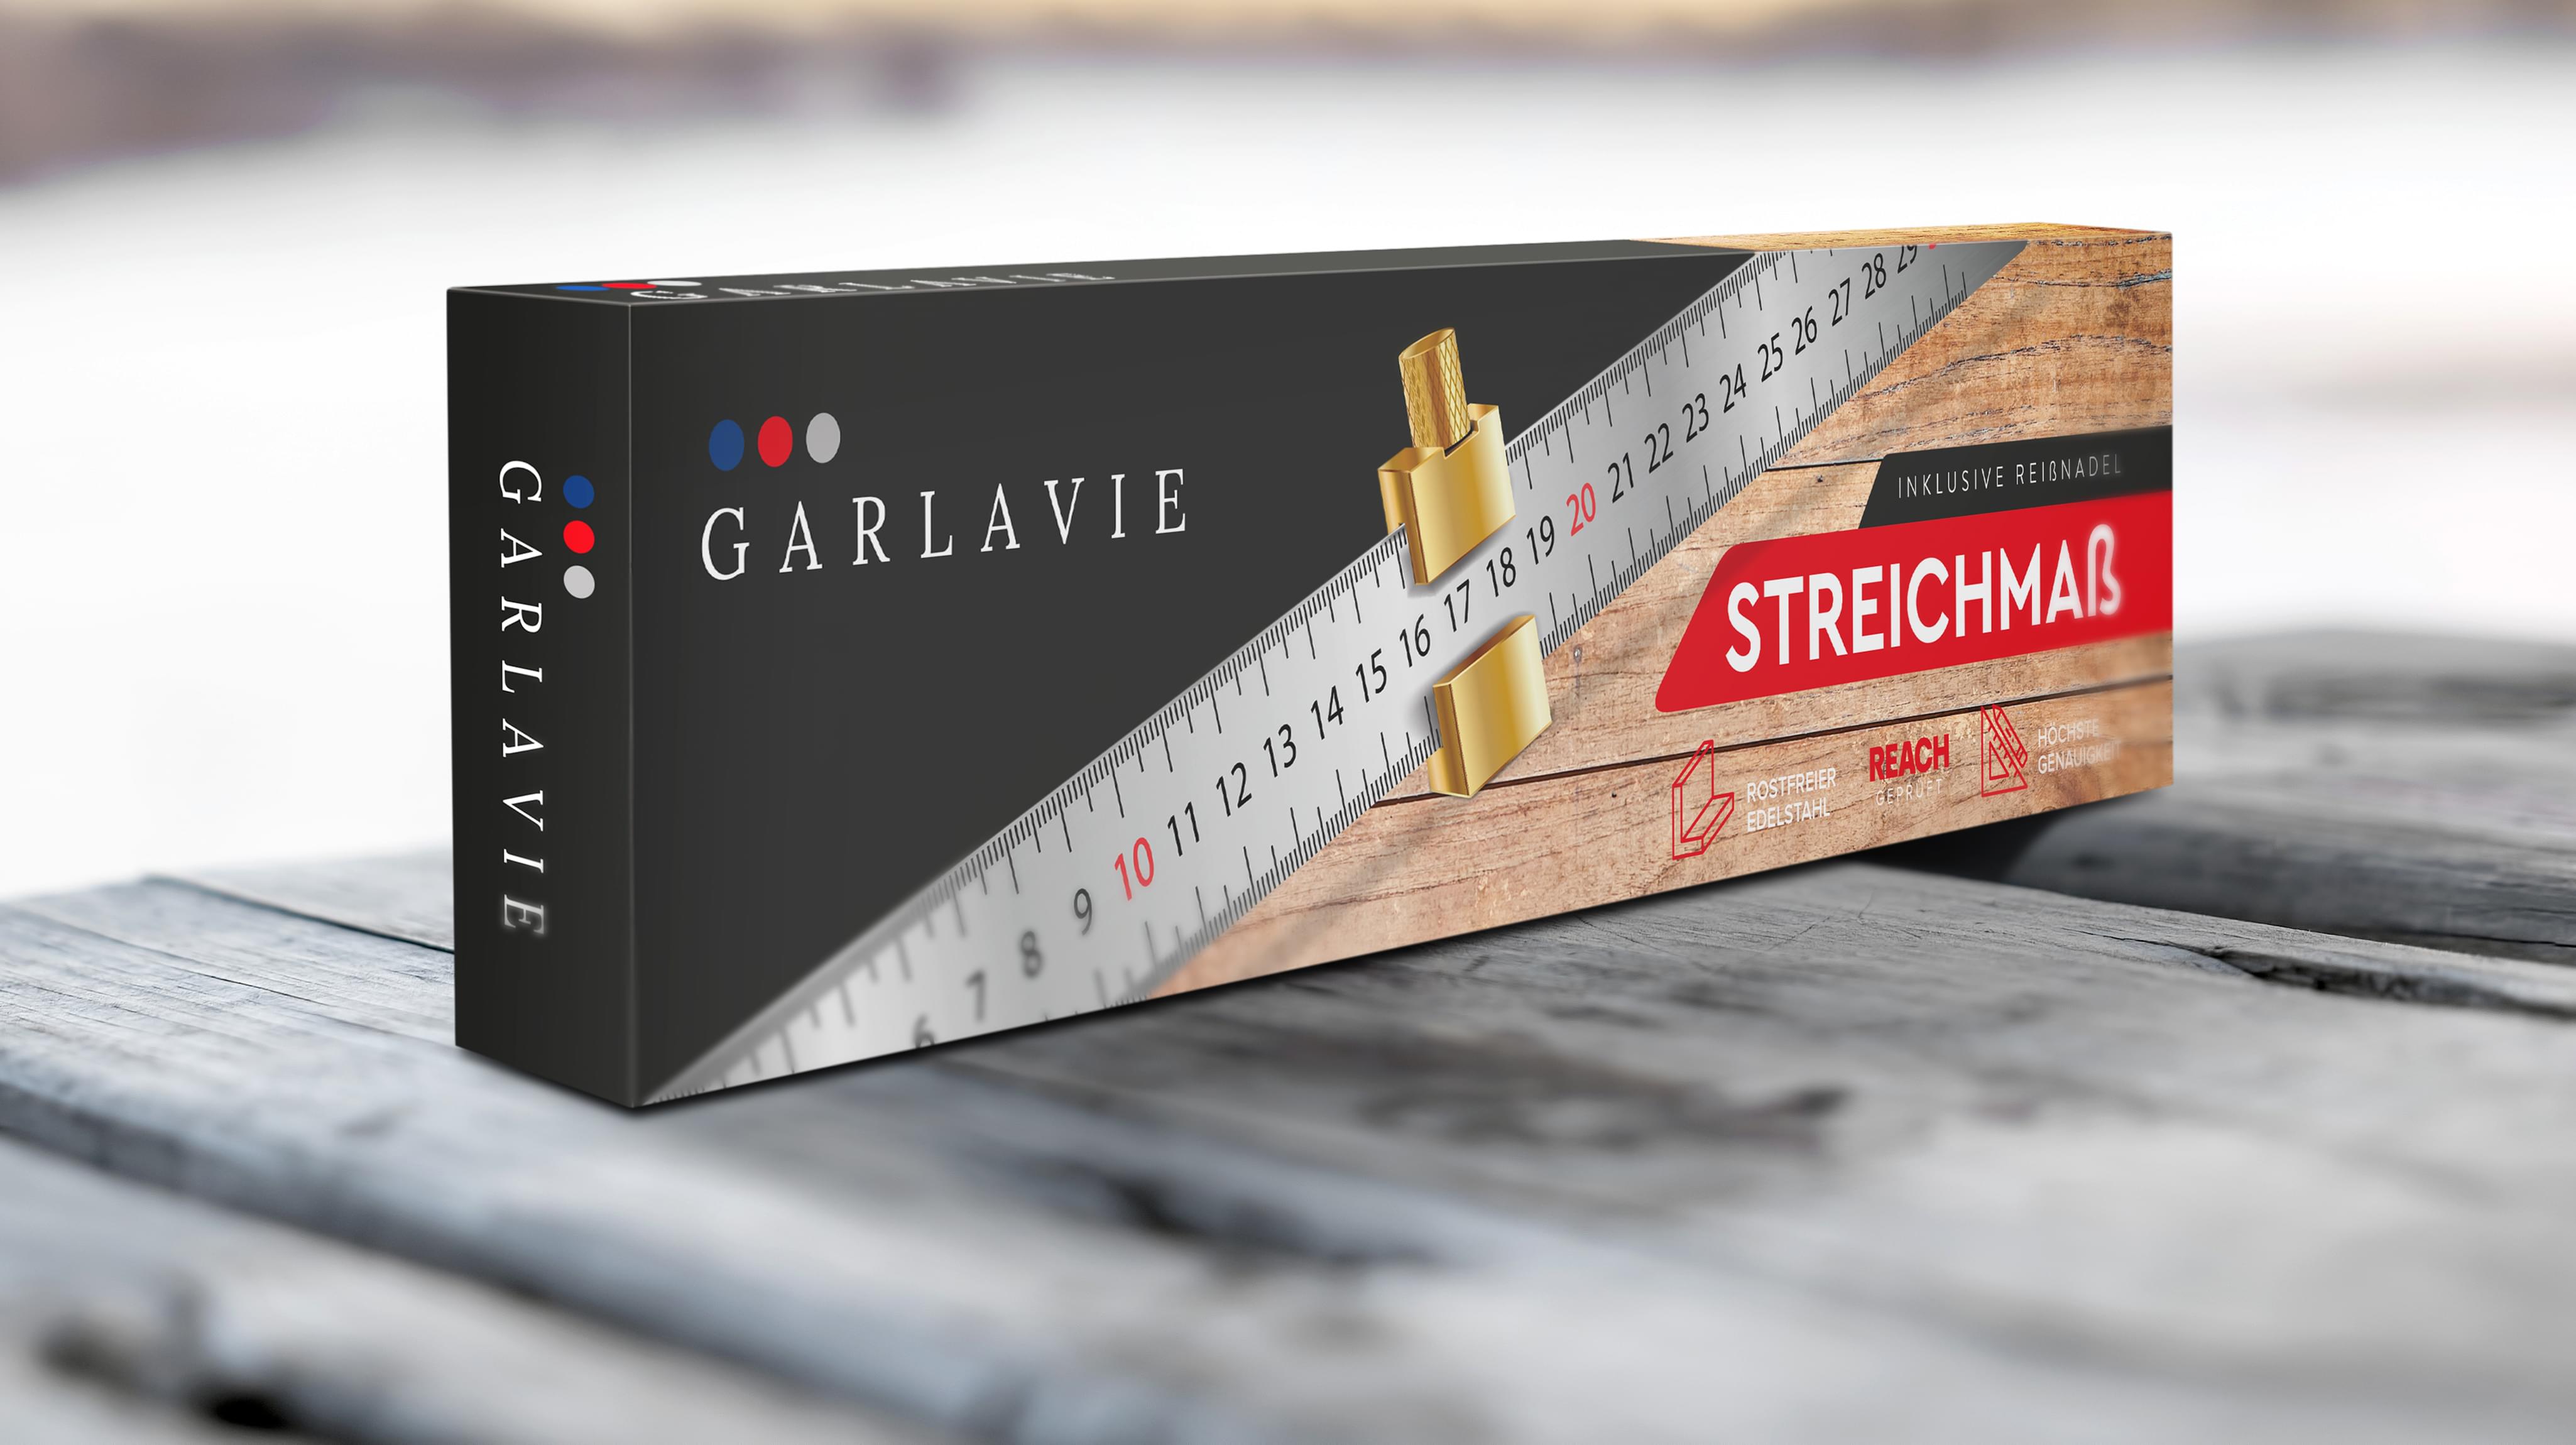 GARLAVIE Packaging